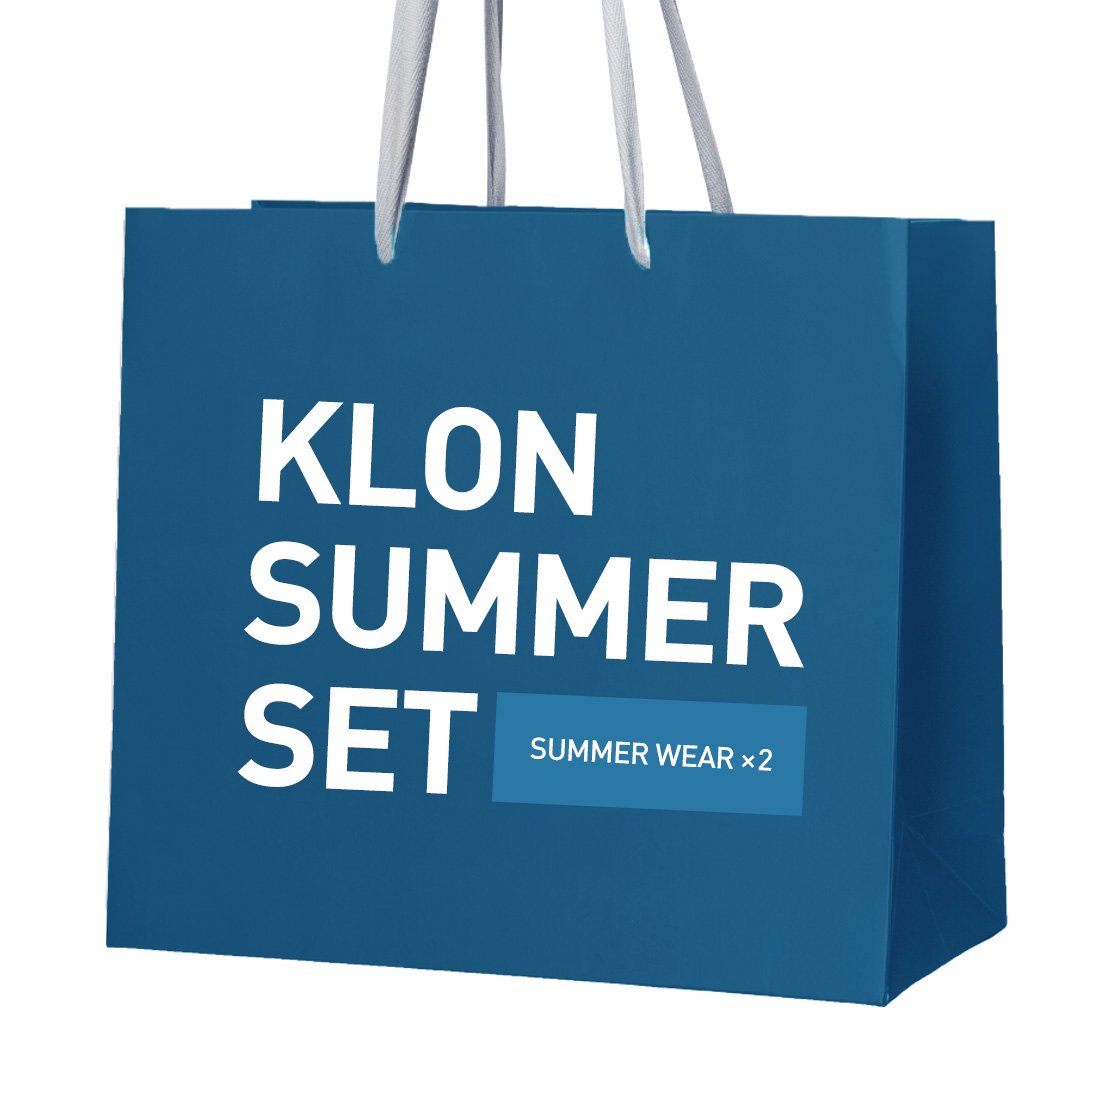 KLON SUMMER SET [WEAR]